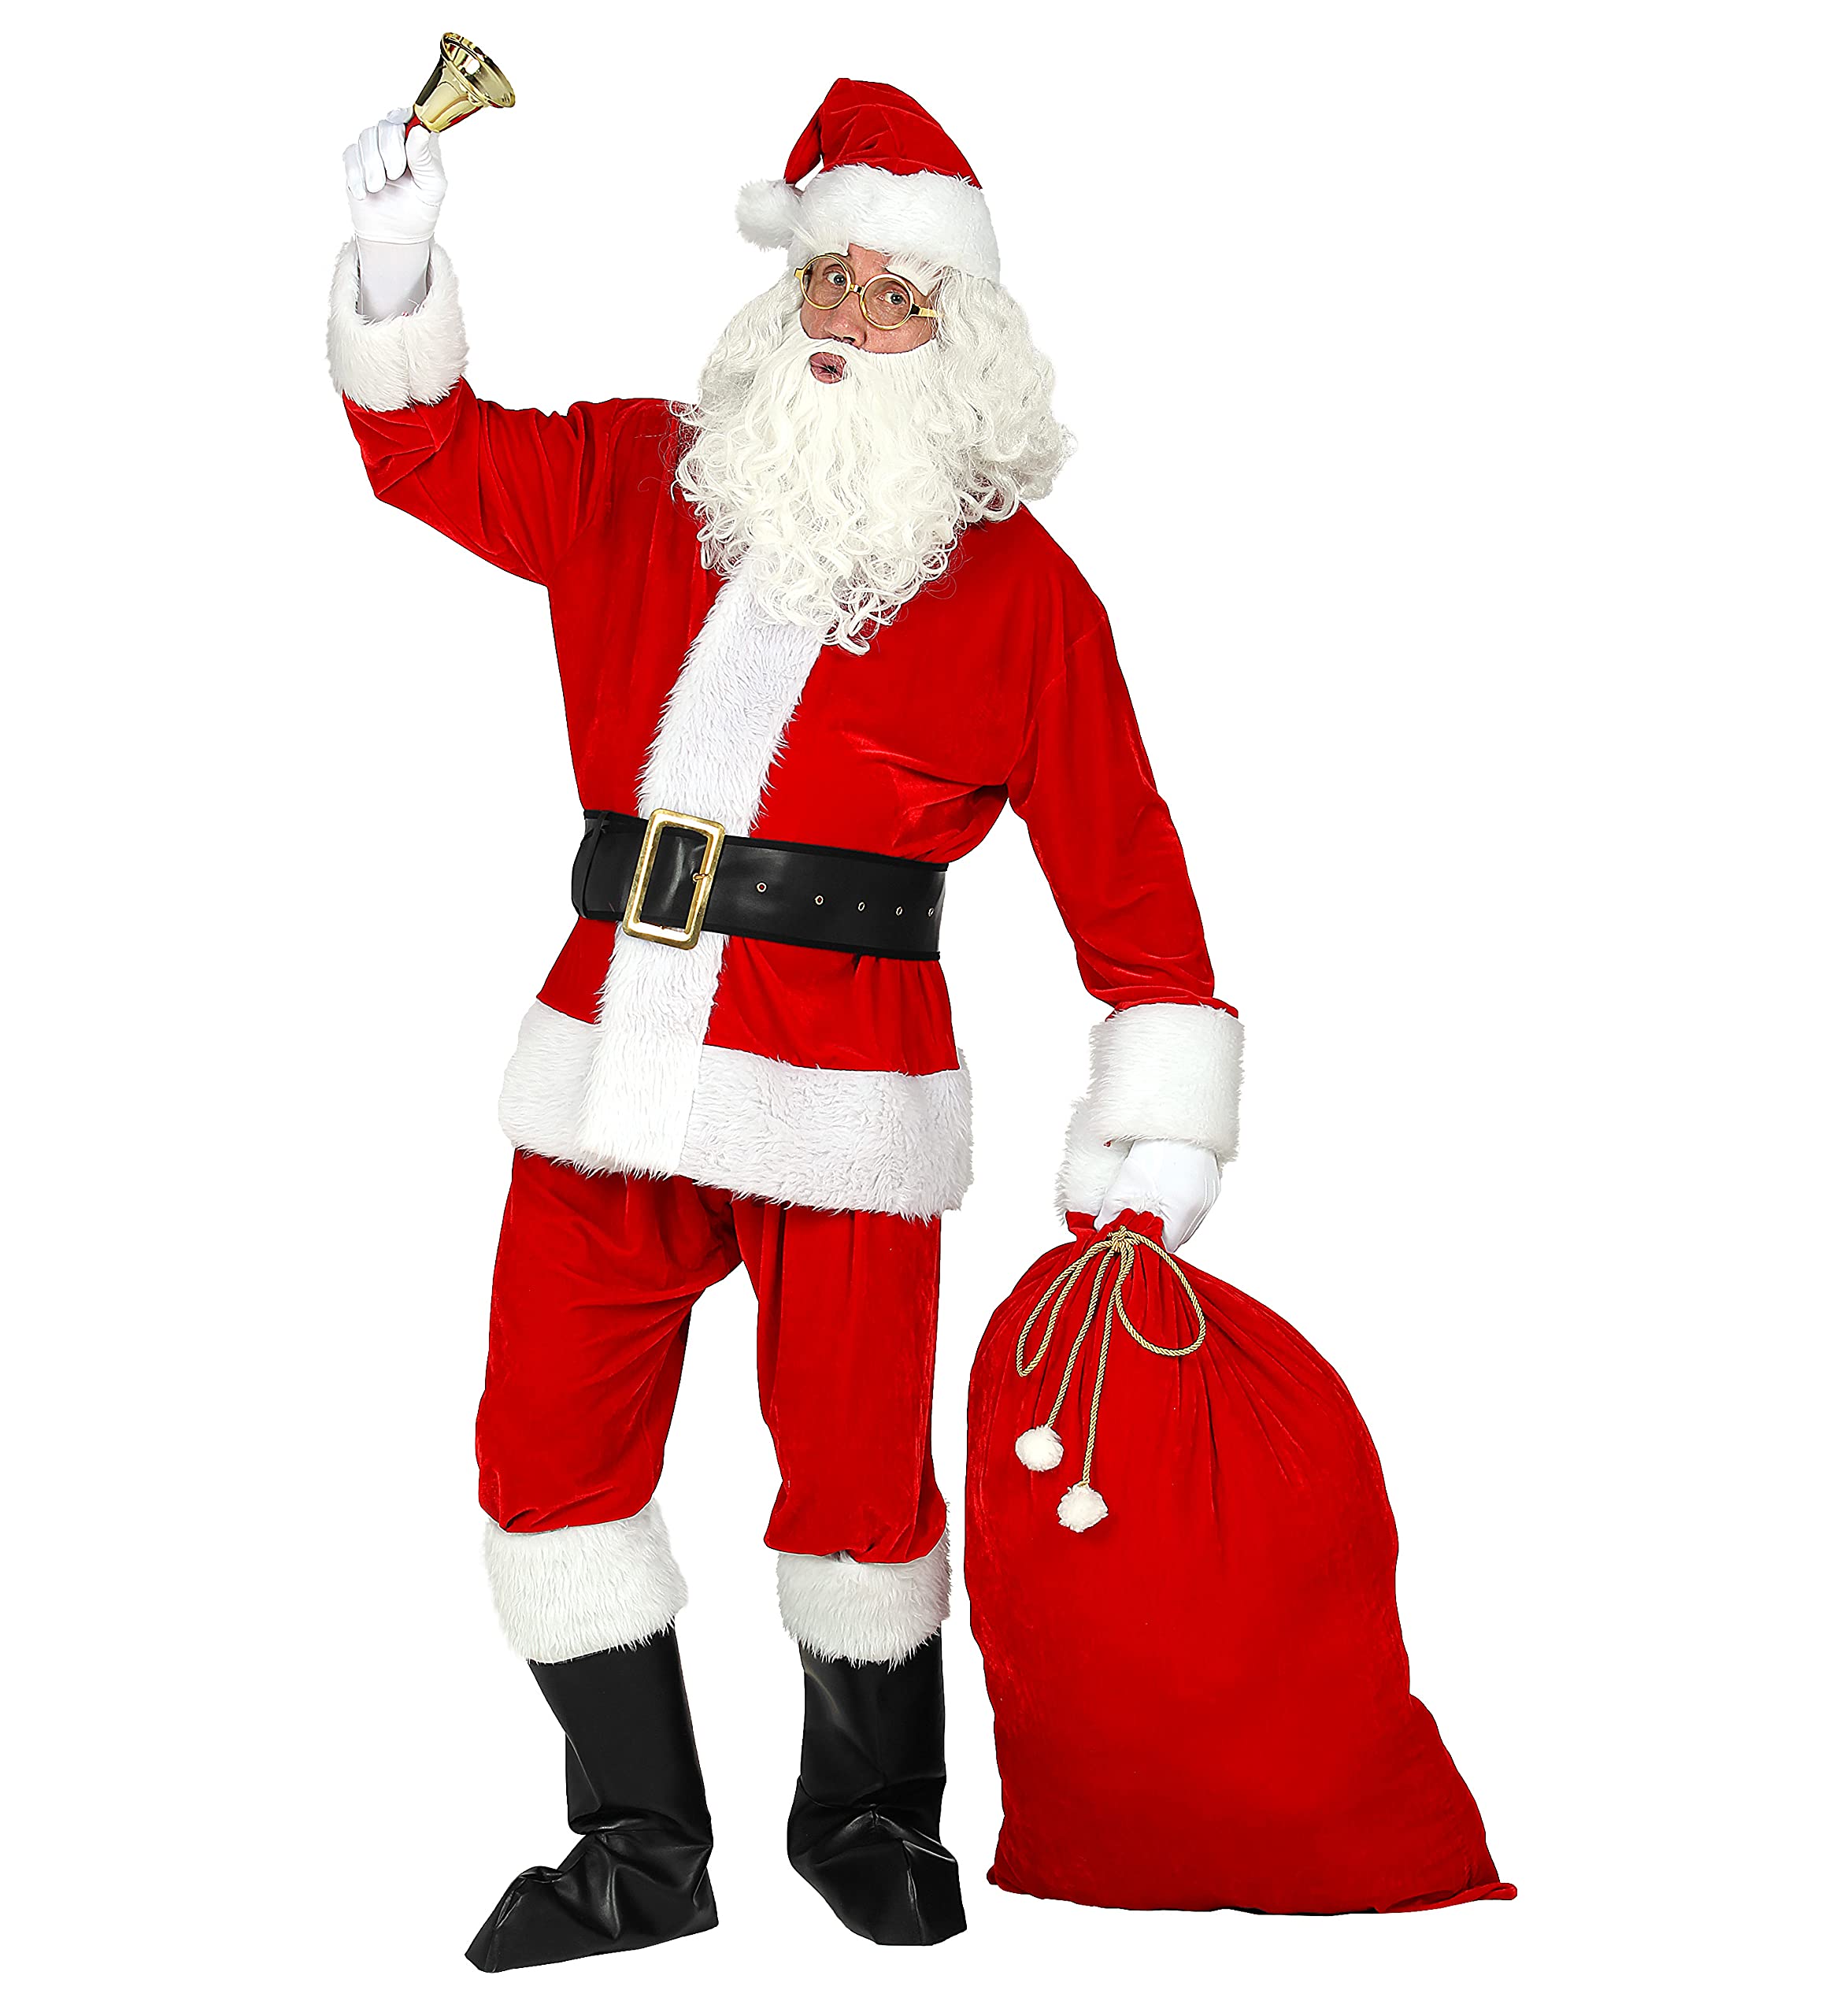 trendmile Premium Weihnachtsmann Kostüm komplett Set Herren bestehend aus Jacke, Hose, Gürtel, Mütze, Bart, Brille, Stiefelüberzieher, Sack - Nikolaus/Santa Claus Verkleidung (XXL/XXXL)